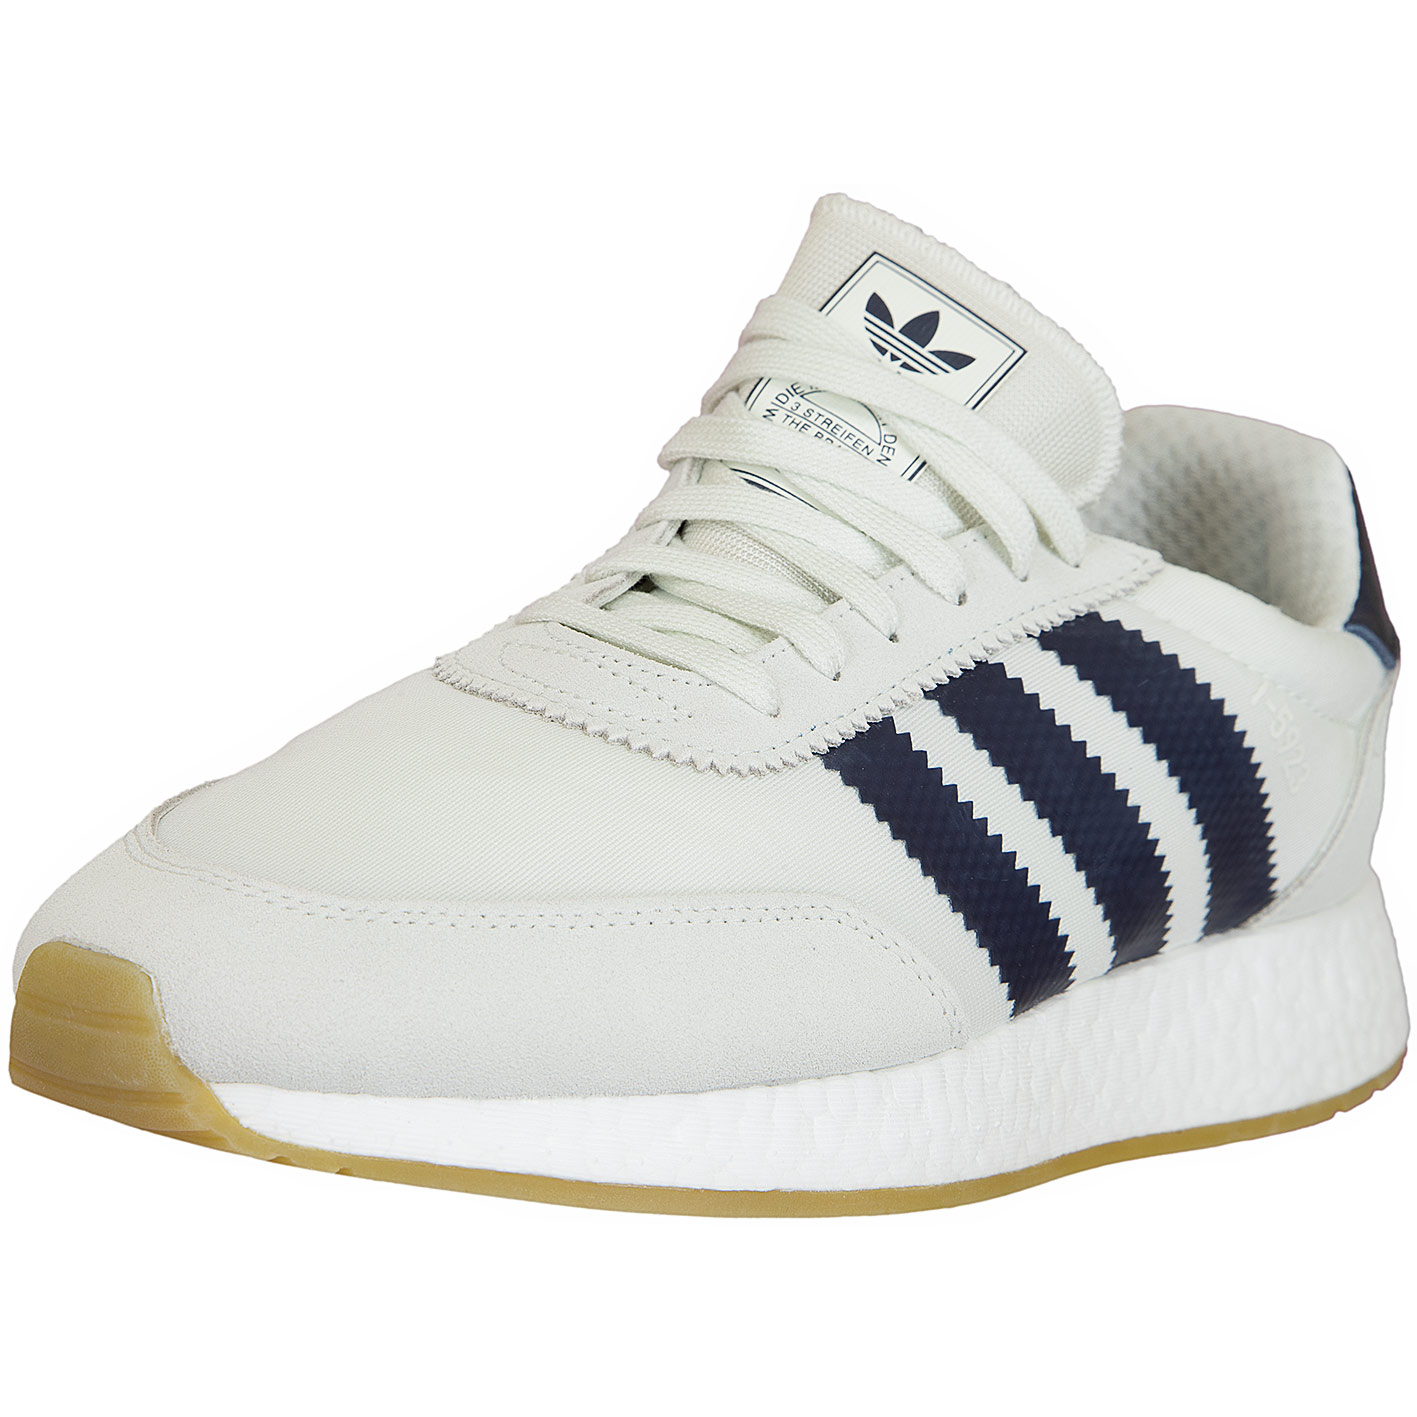 ☆ Adidas Originals Sneaker I-5923 weiß/dunkelblau - hier bestellen!